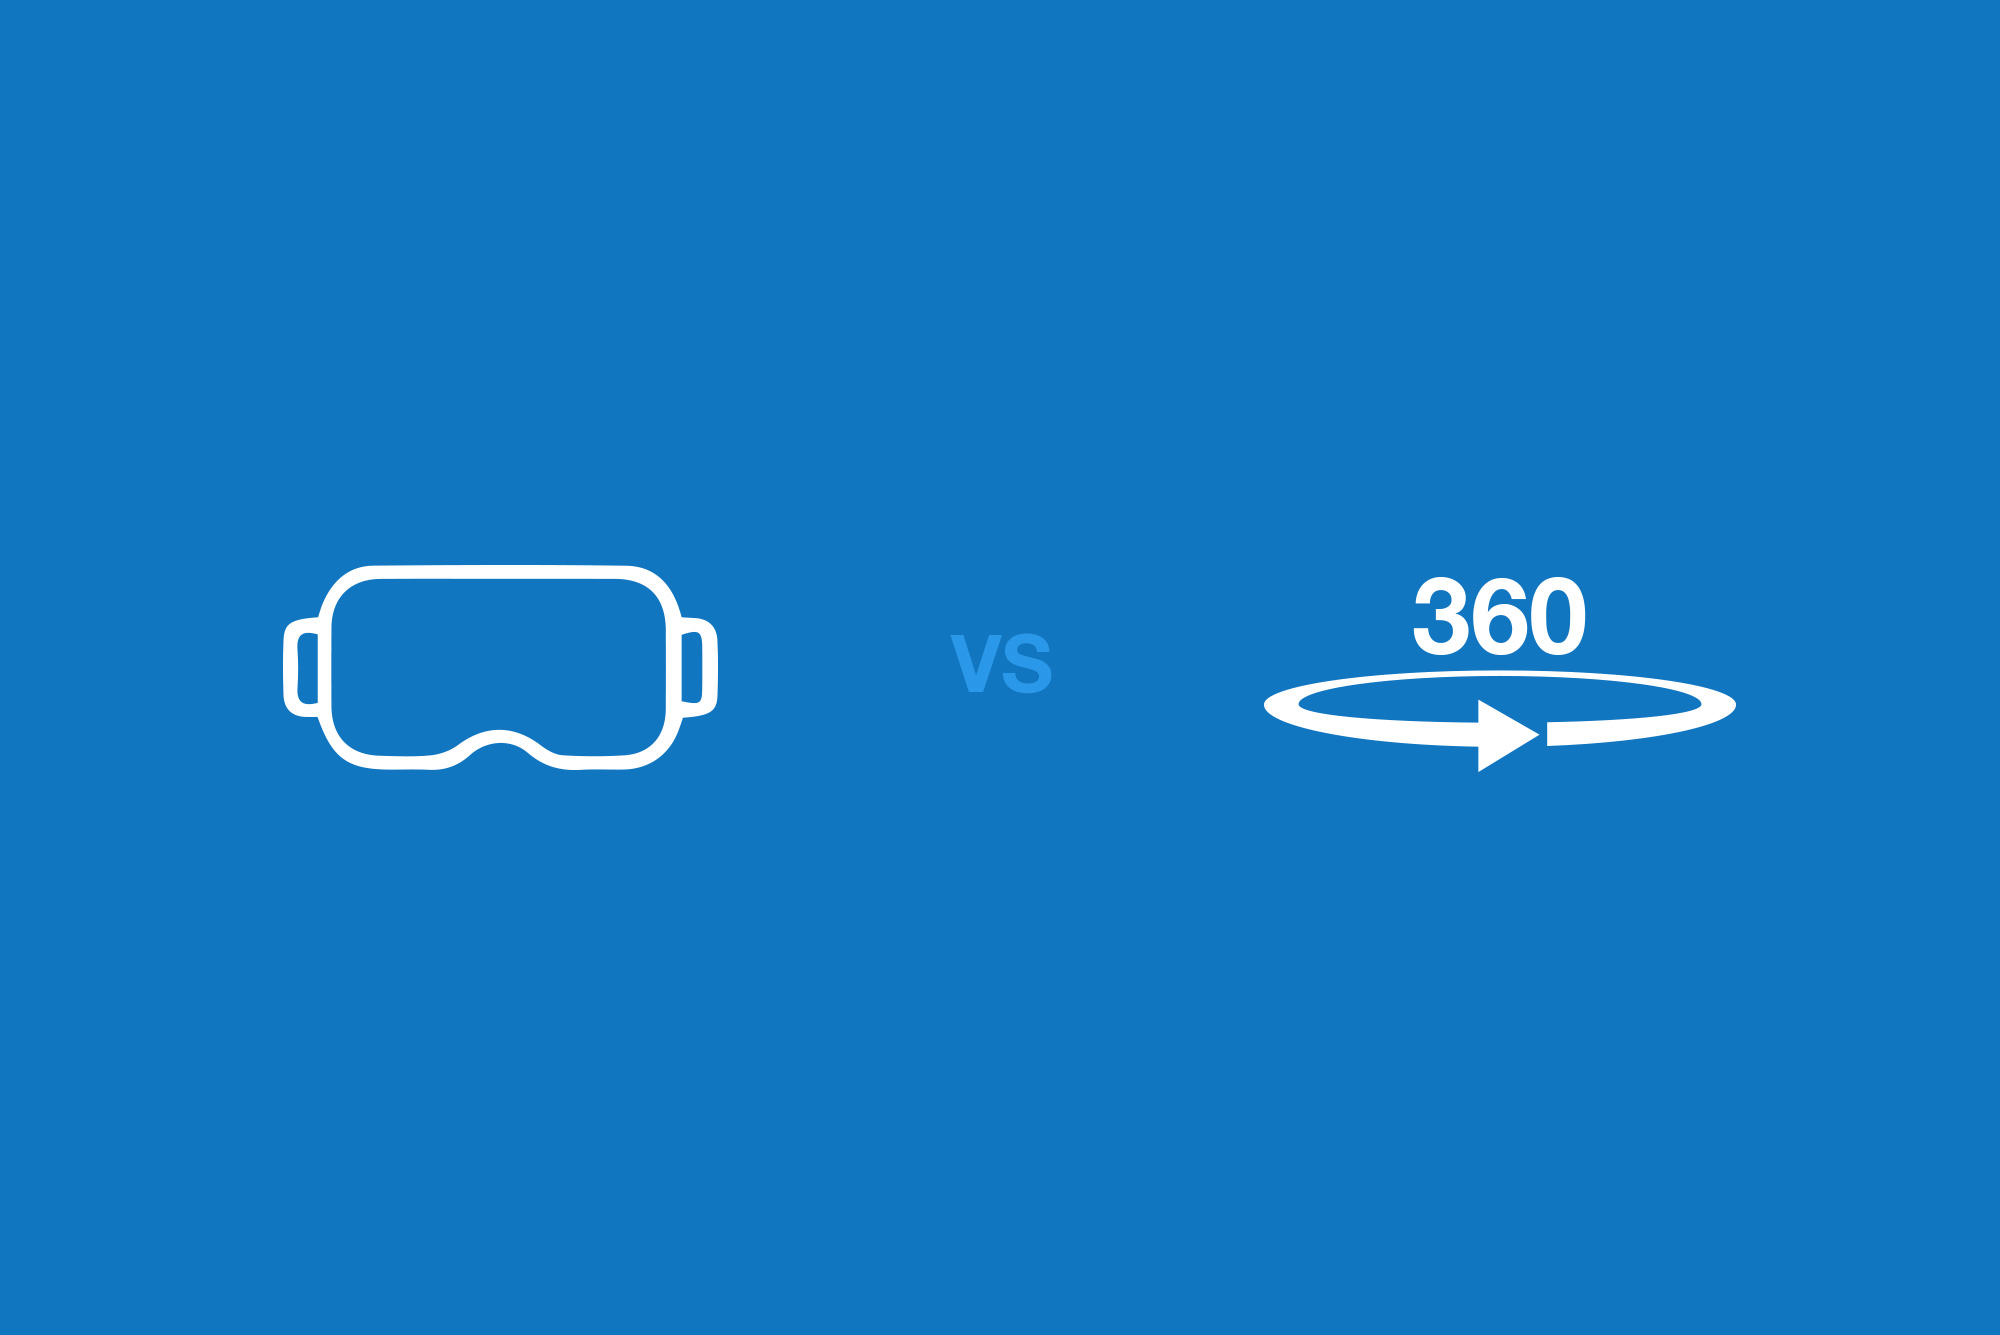 VR headset logo in white vs 360 video logo in white on blue background